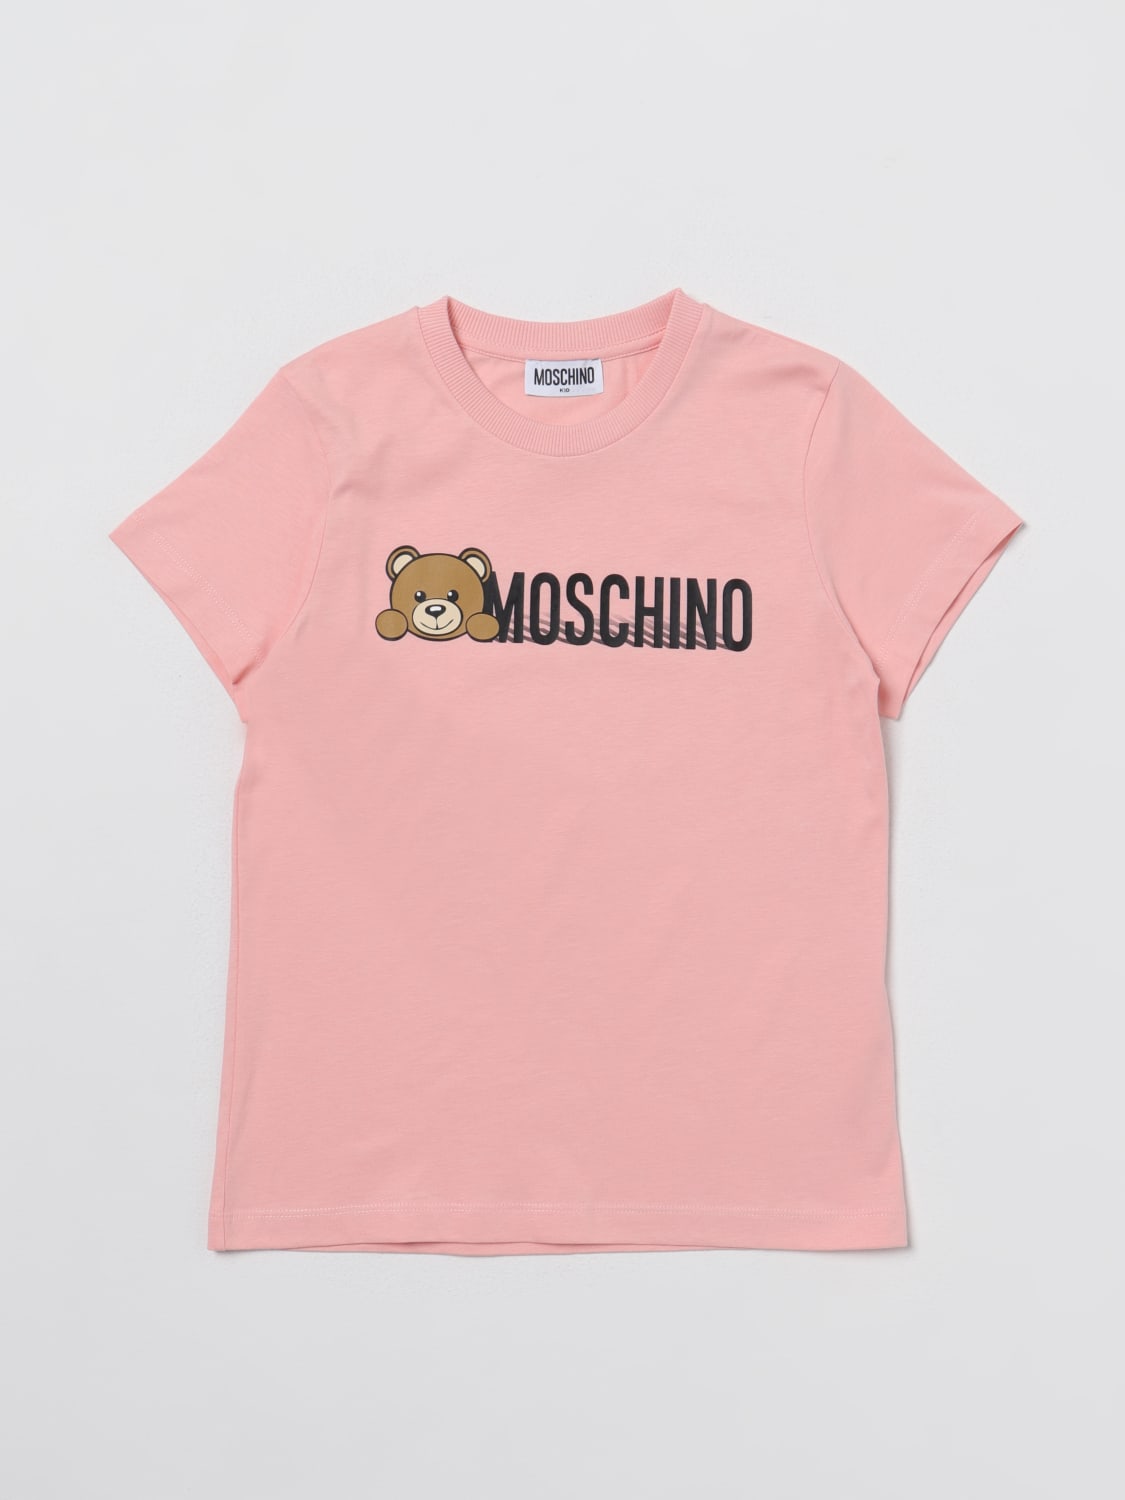 MOSCHINO KID: t-shirt in cotton - Pink | Moschino Kid t-shirt ...